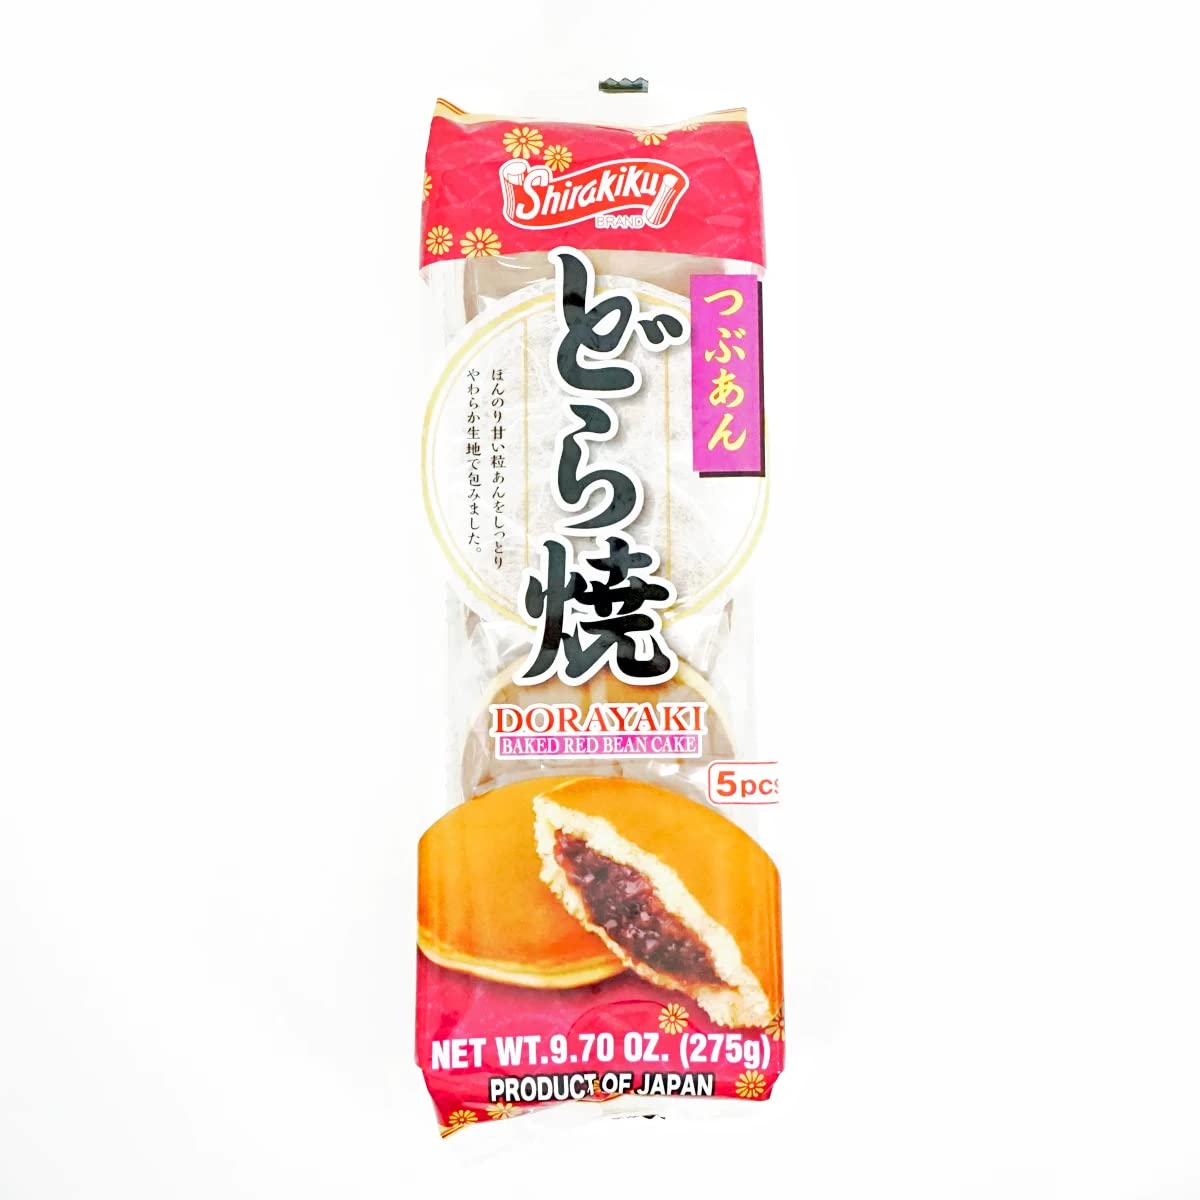 Shirakiku Dorayaki Japanese Baked Red Bean Cake 9.7oz x 2 Packs ( 10 Cakes Total )